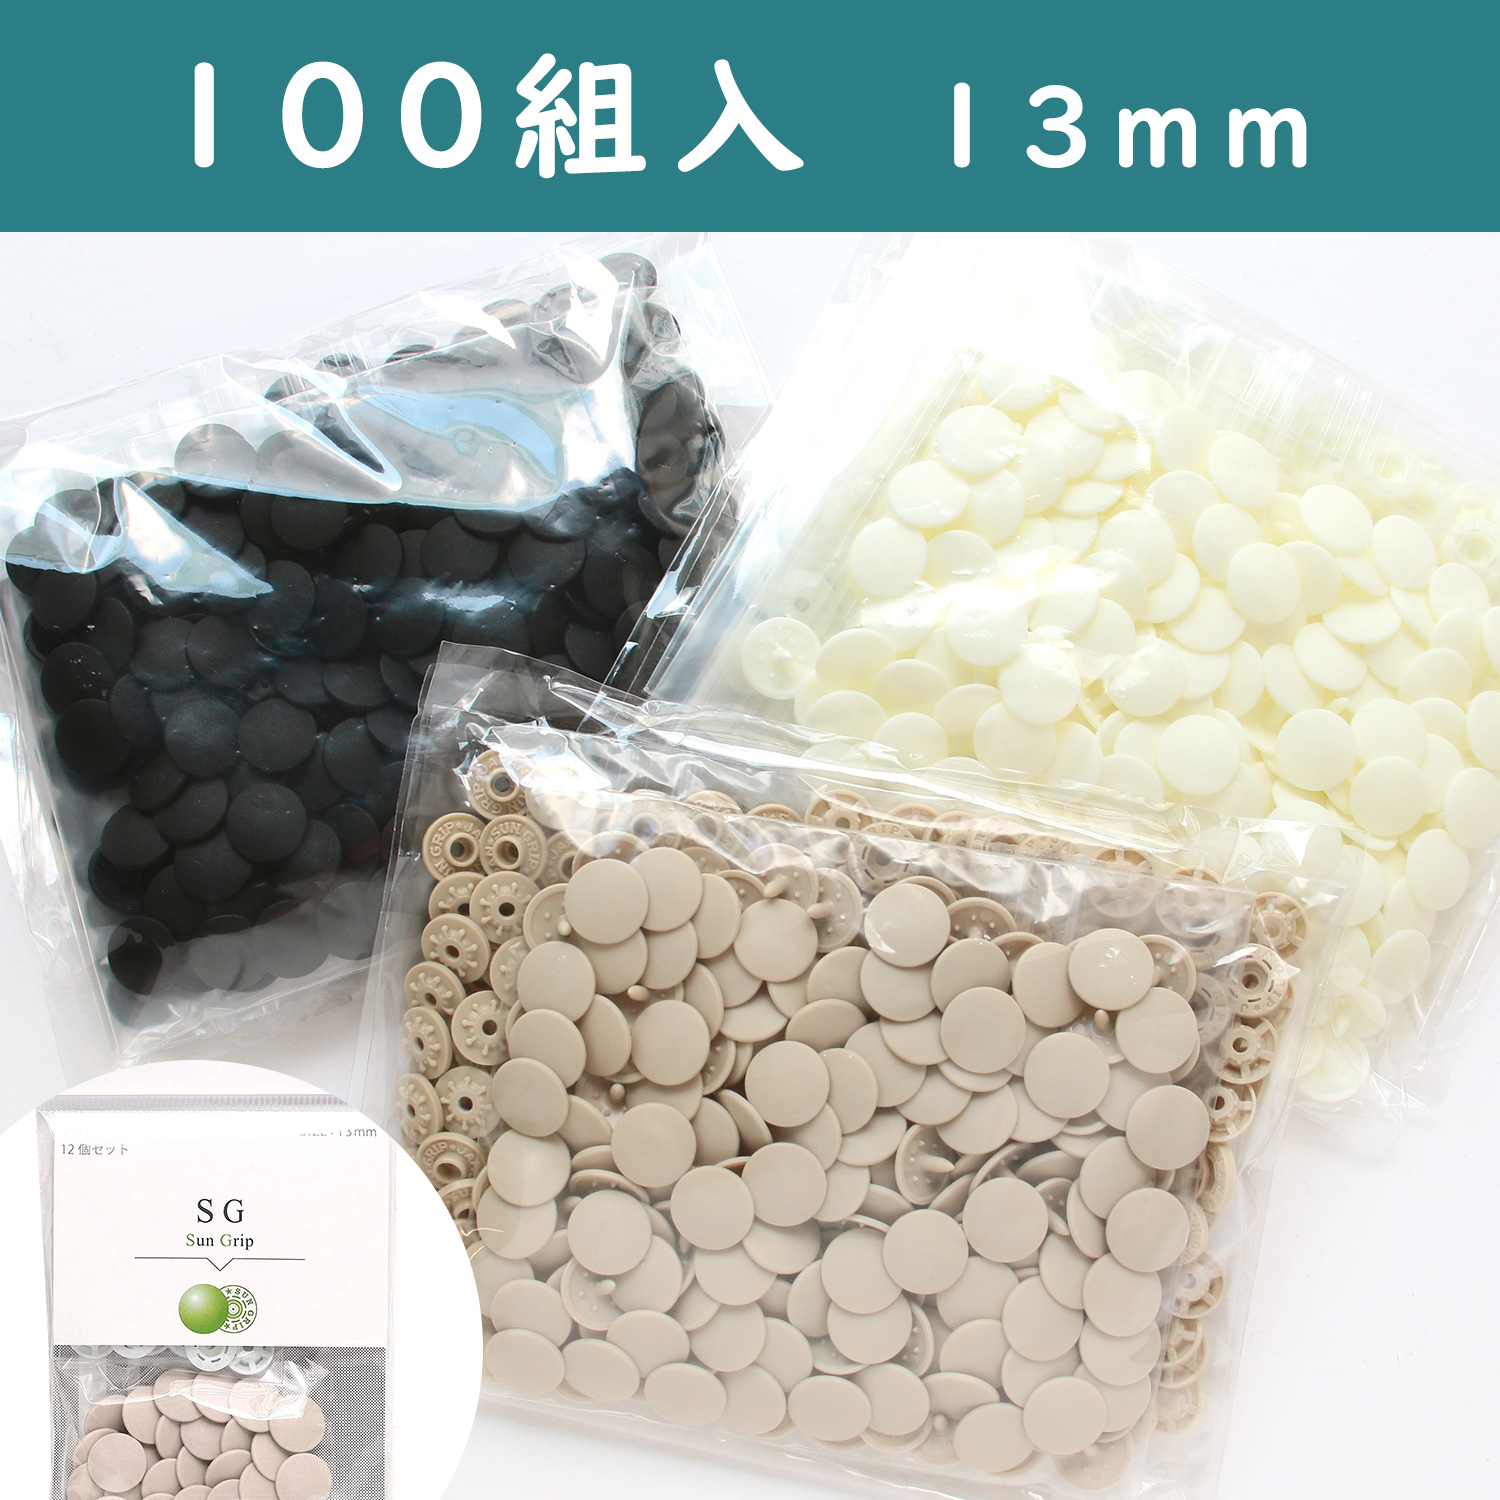 【お徳用100組!】SG-100 SUN GRIP サングリップ 13mm 徳用100組入り プラスチックスナップ (袋)